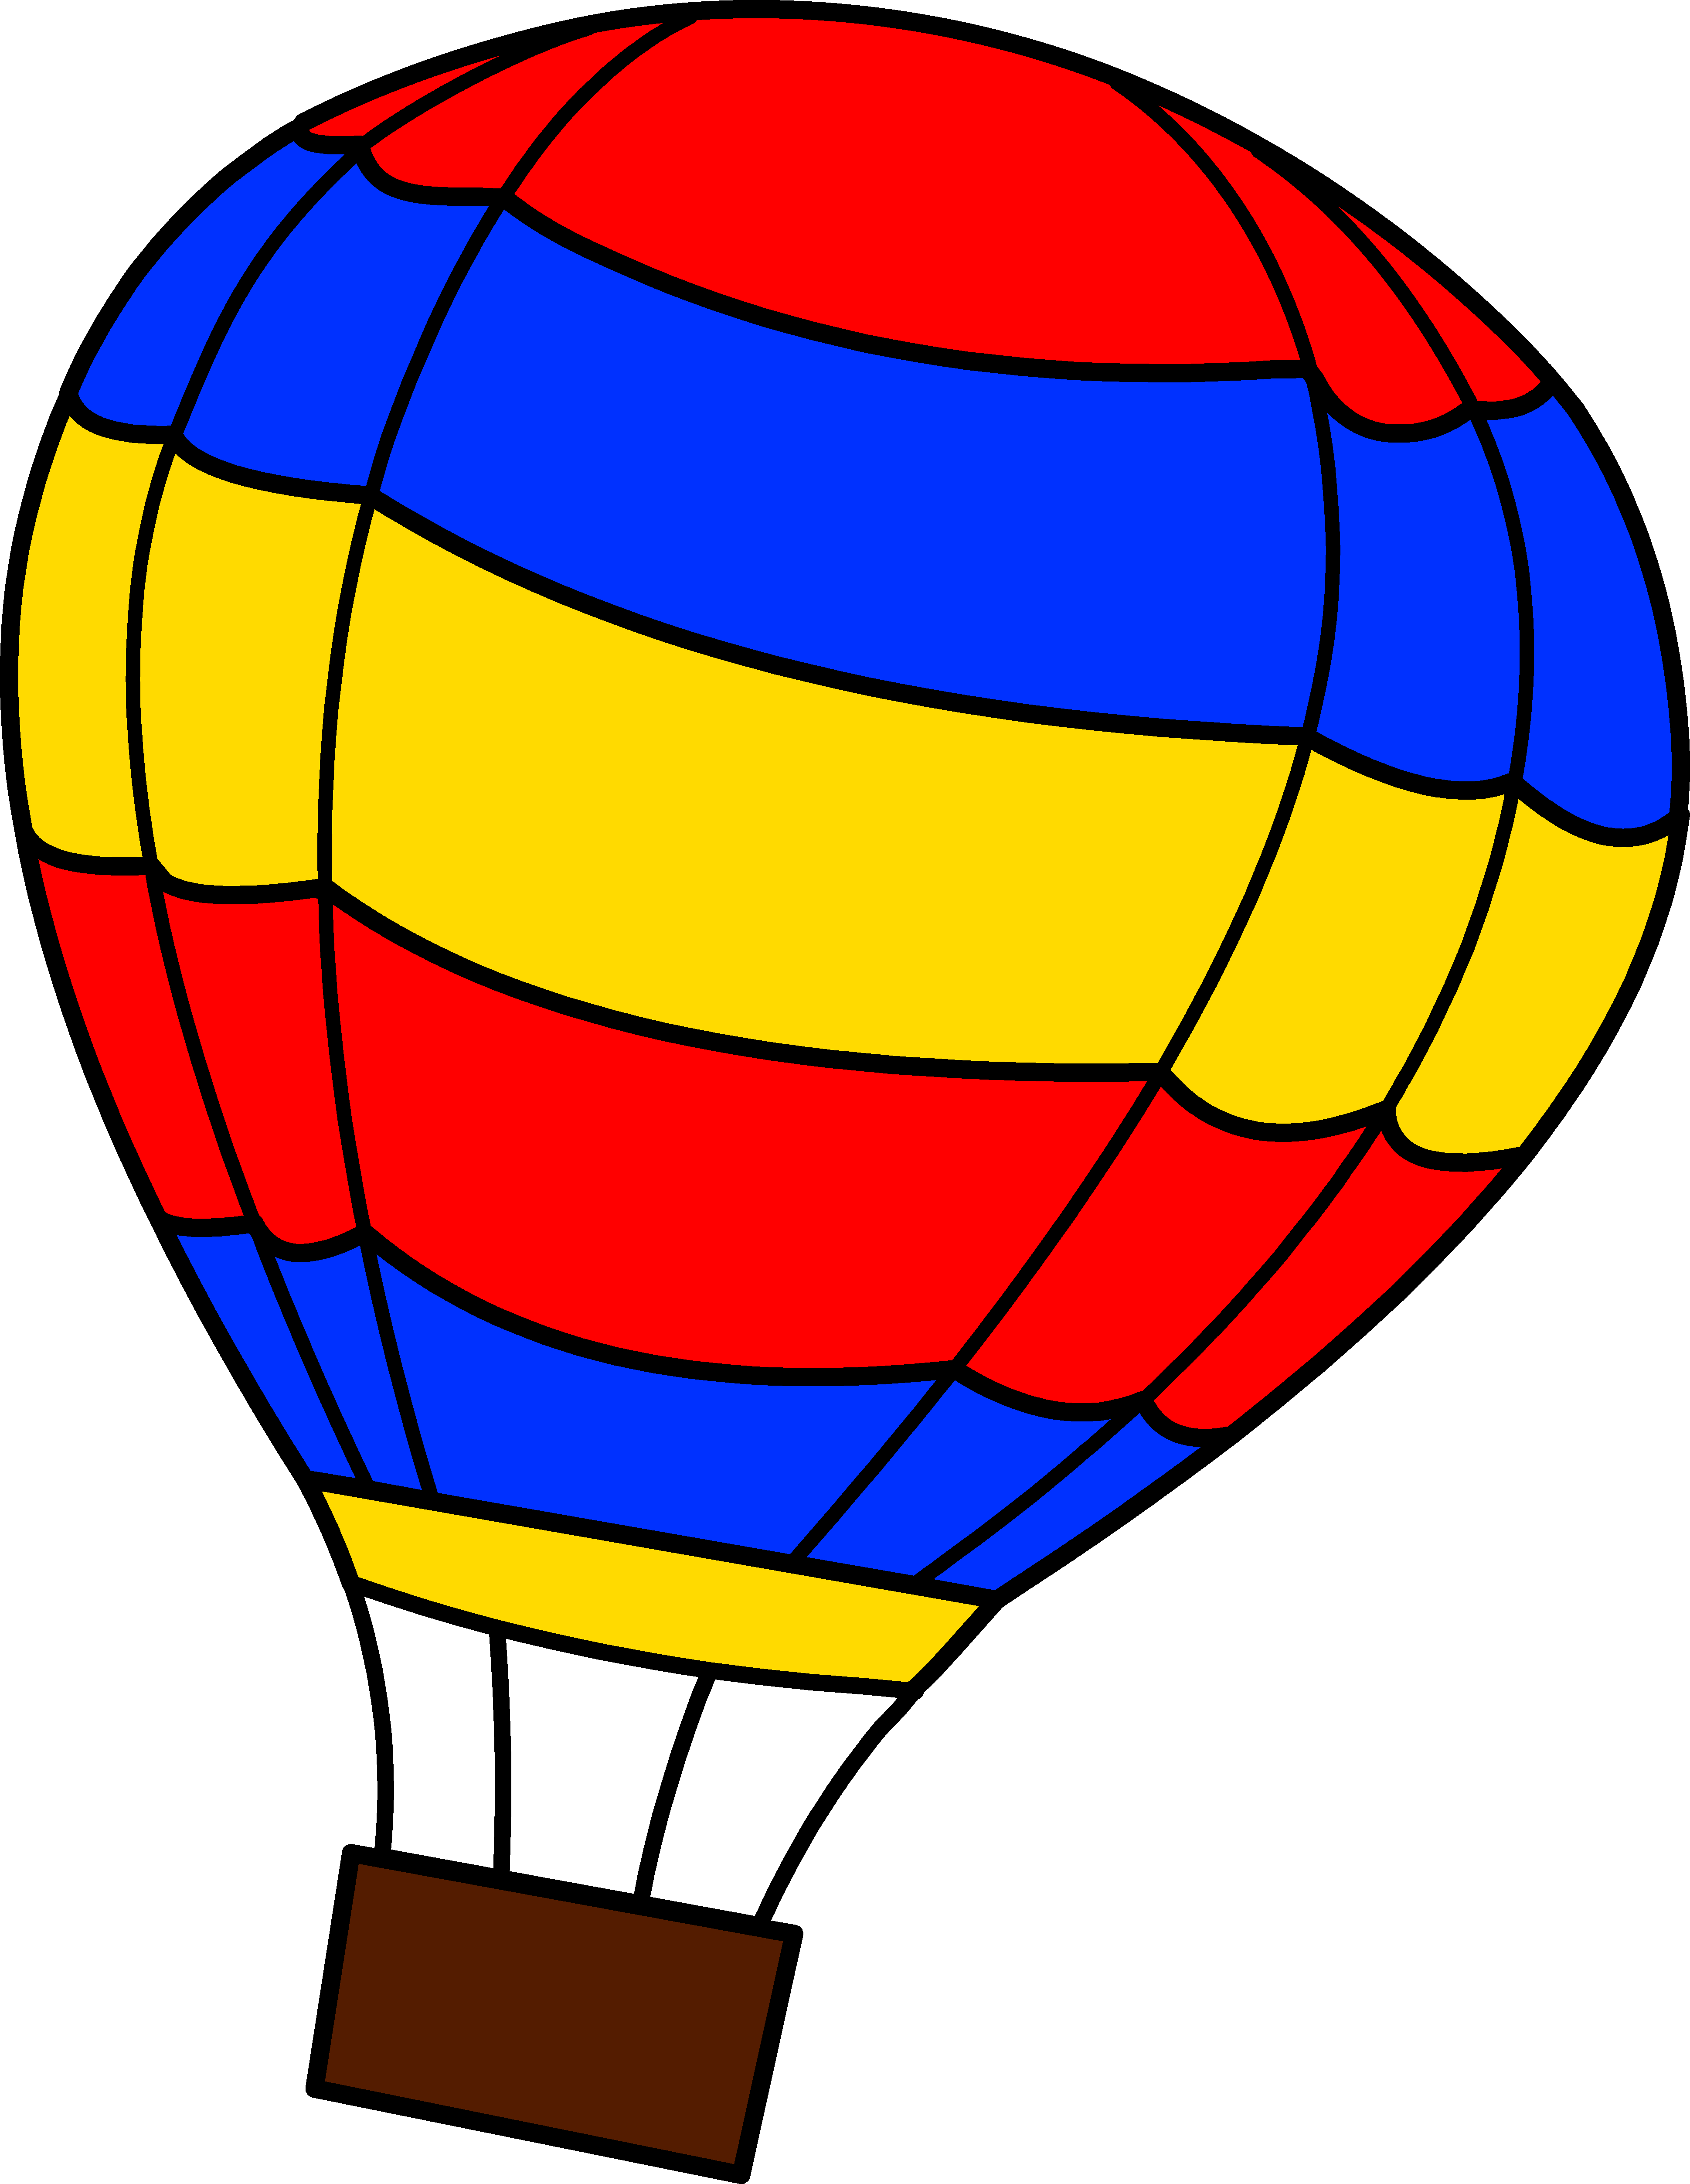 Hot air balloon clip art - ClipartFox